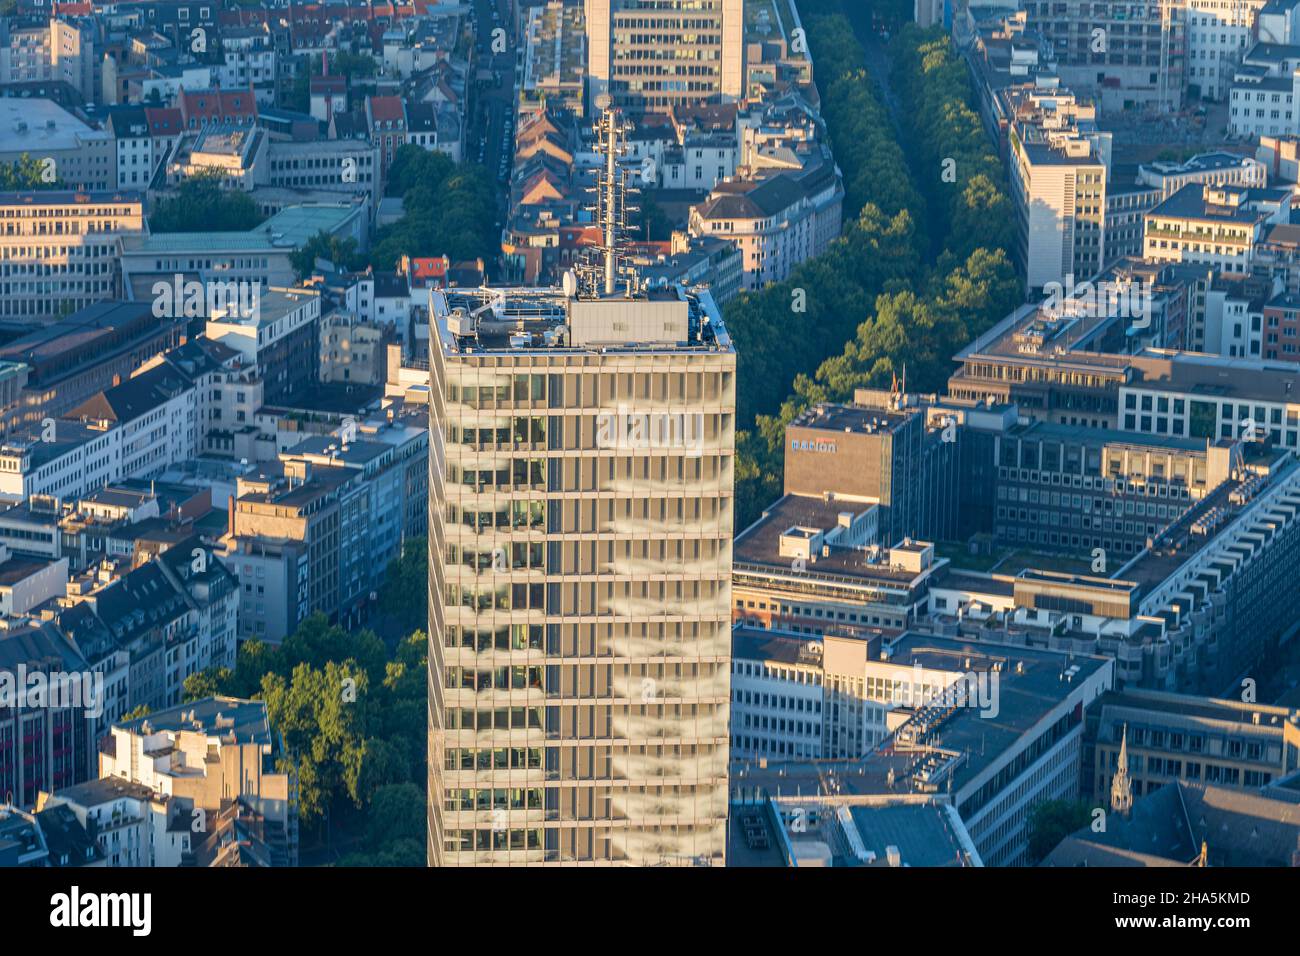 la torre de colonia (en alemán: kölnturm), un rascacielos de oficinas de 44 plantas situado en el distrito de 148,5-neustadt-nord de colonia, a 487 m (165,48 pies) de altura, o 542,9 m (köln pies), incluida su antena, capturado a través de zeppelin a primera hora de la mañana después del amanecer. pared de gladbacher, colonia, renania del norte-westfalia, alemania Foto de stock